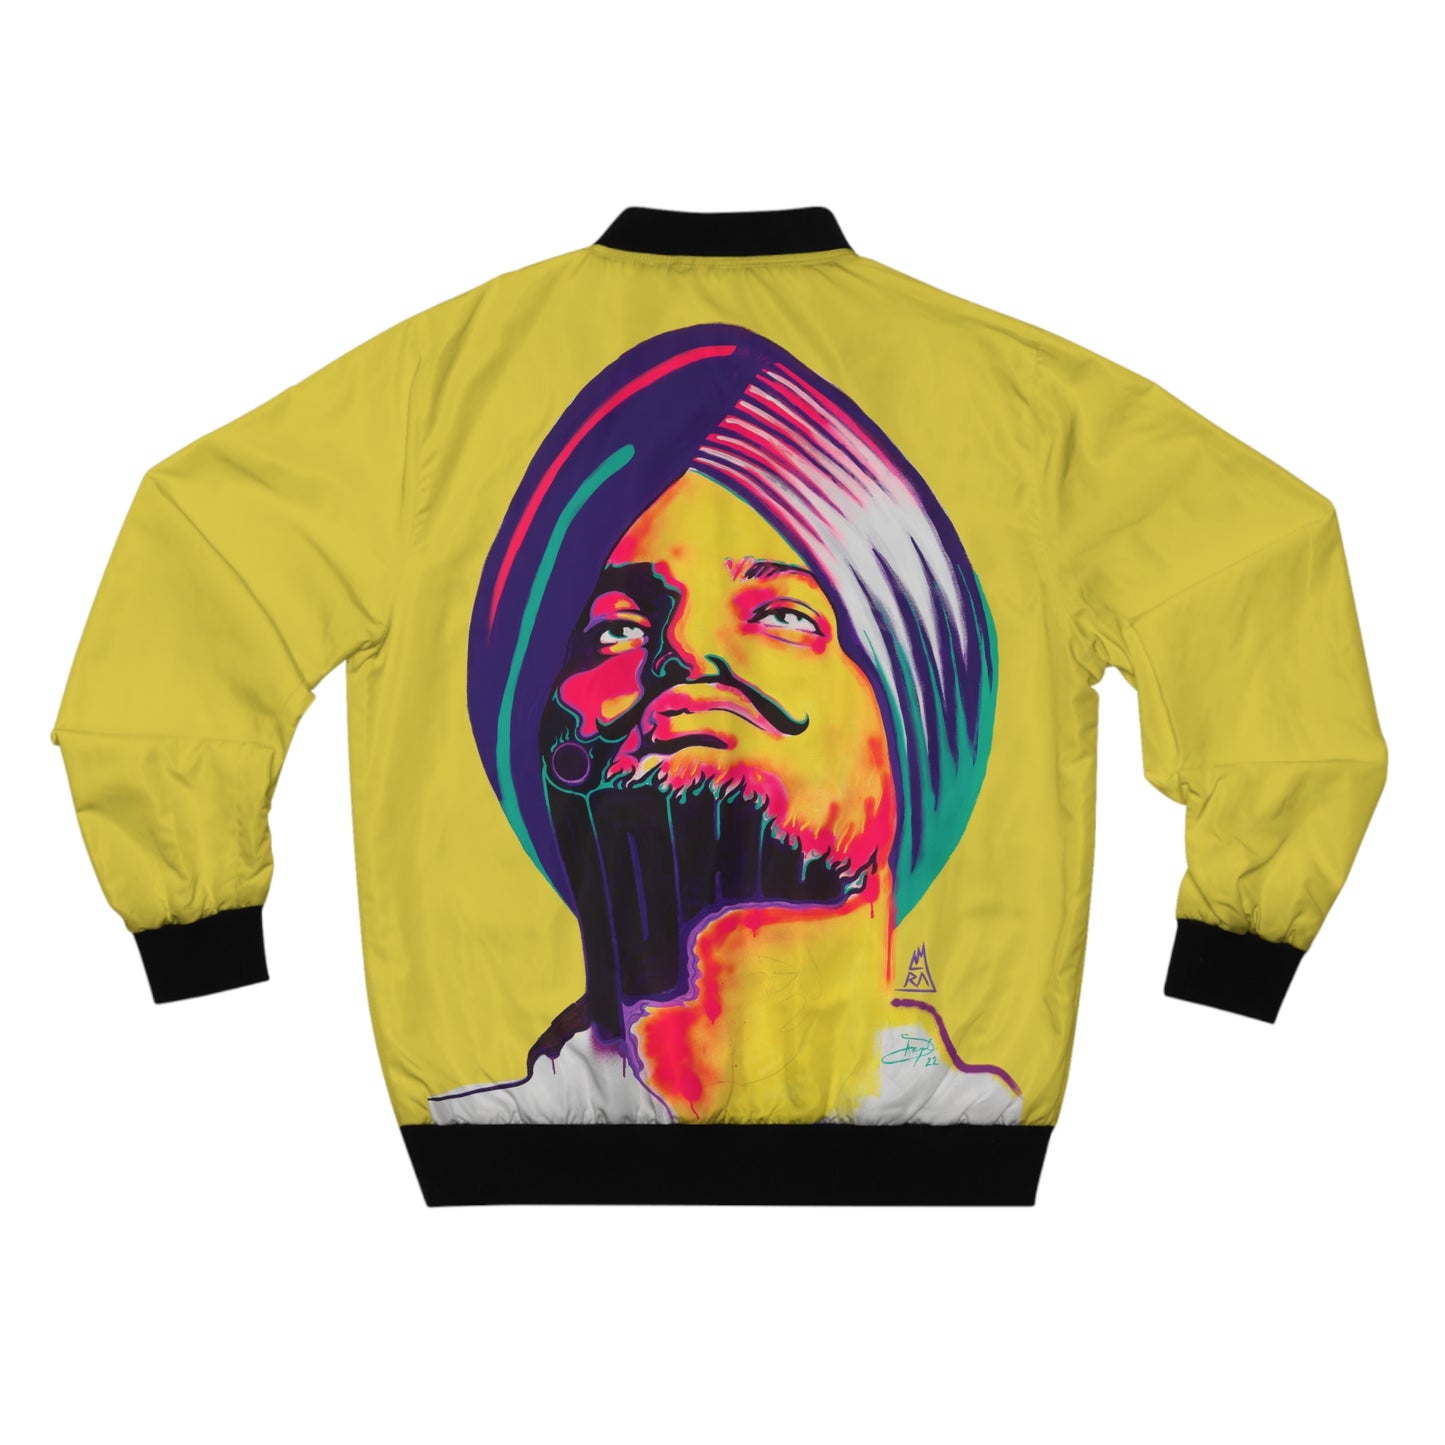 Sidhu Moosewala by Amraj Singh - Yellow Bomber Jacket